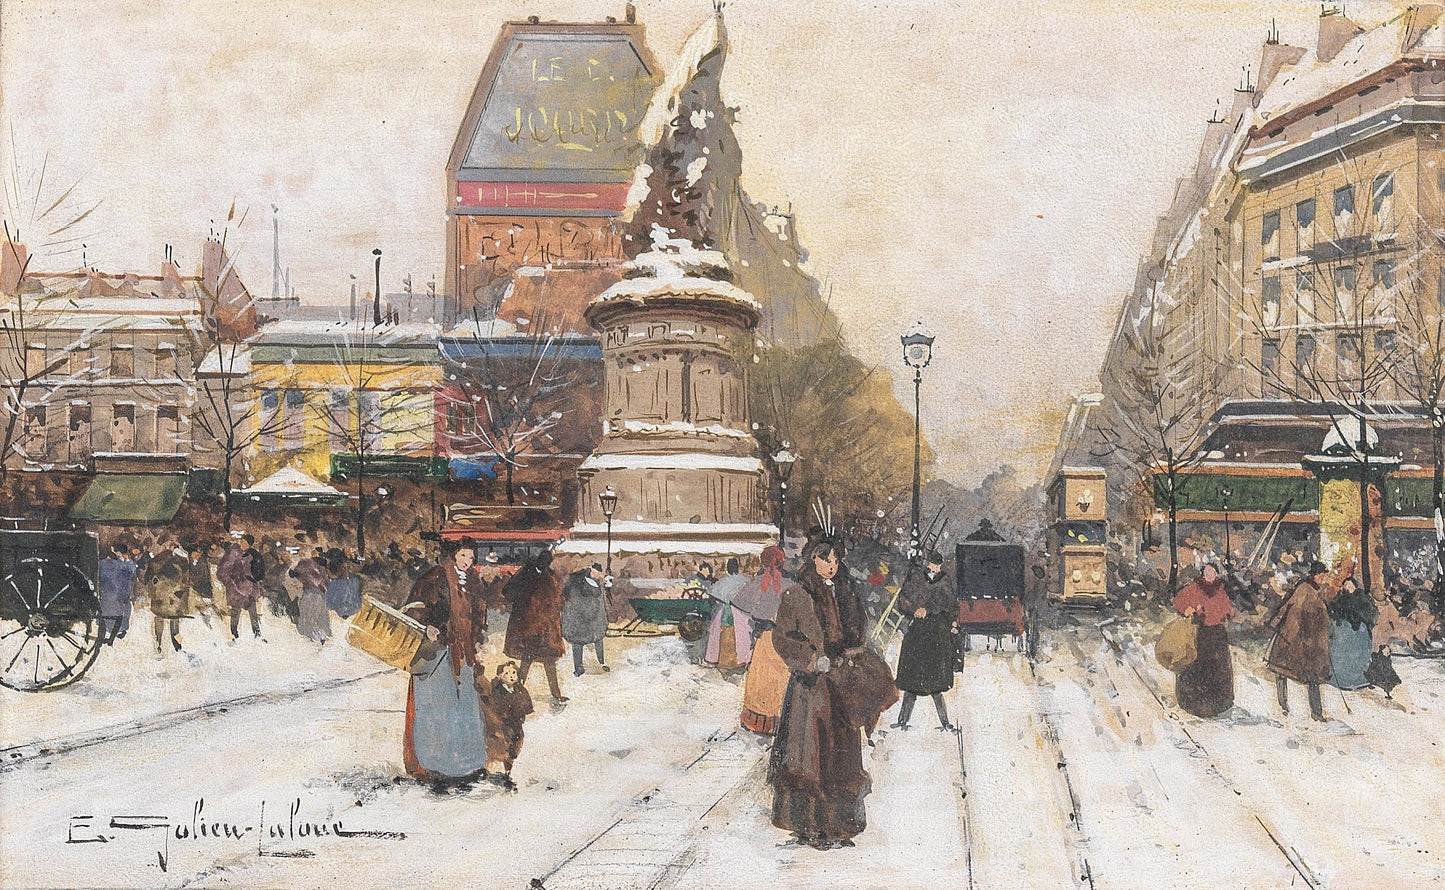 Eugène Galien-Laloue Paris in Autumn & Winter Paintings Set 1 [36 Images]